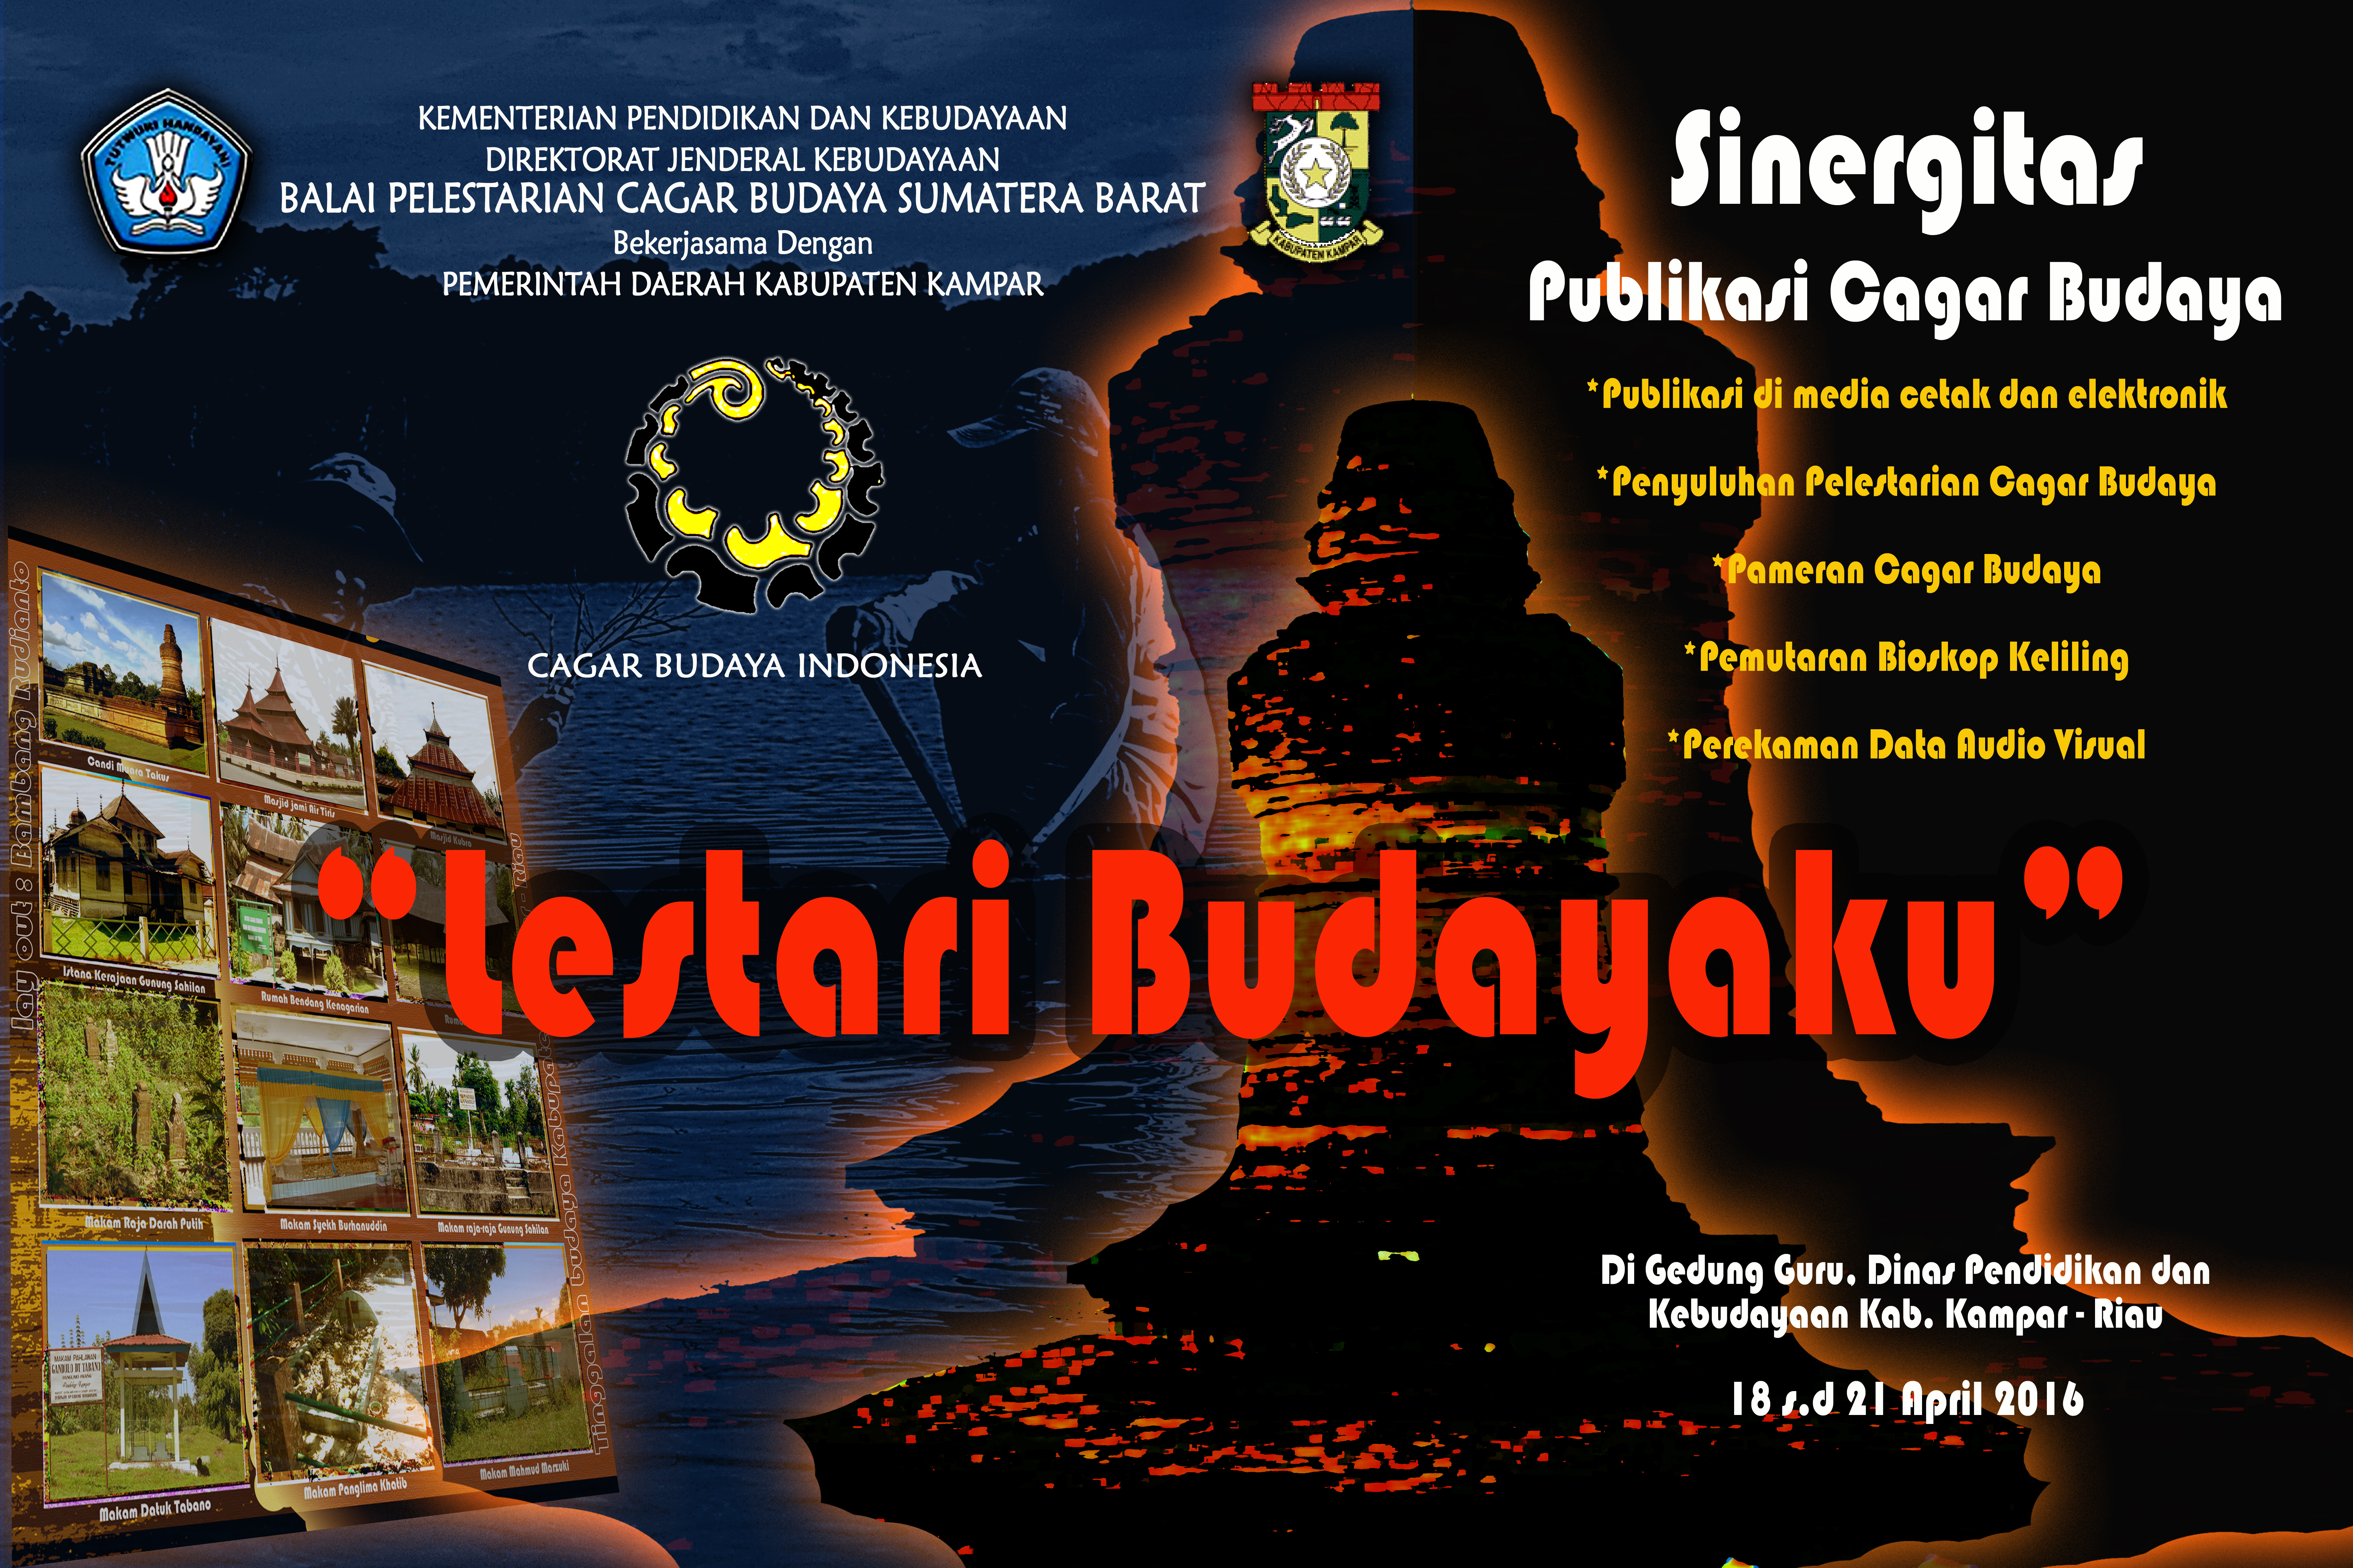 Sinergitas Publikasi Cagar Budaya“Lestari Budayaku” Di Kab. Kampar, Riau